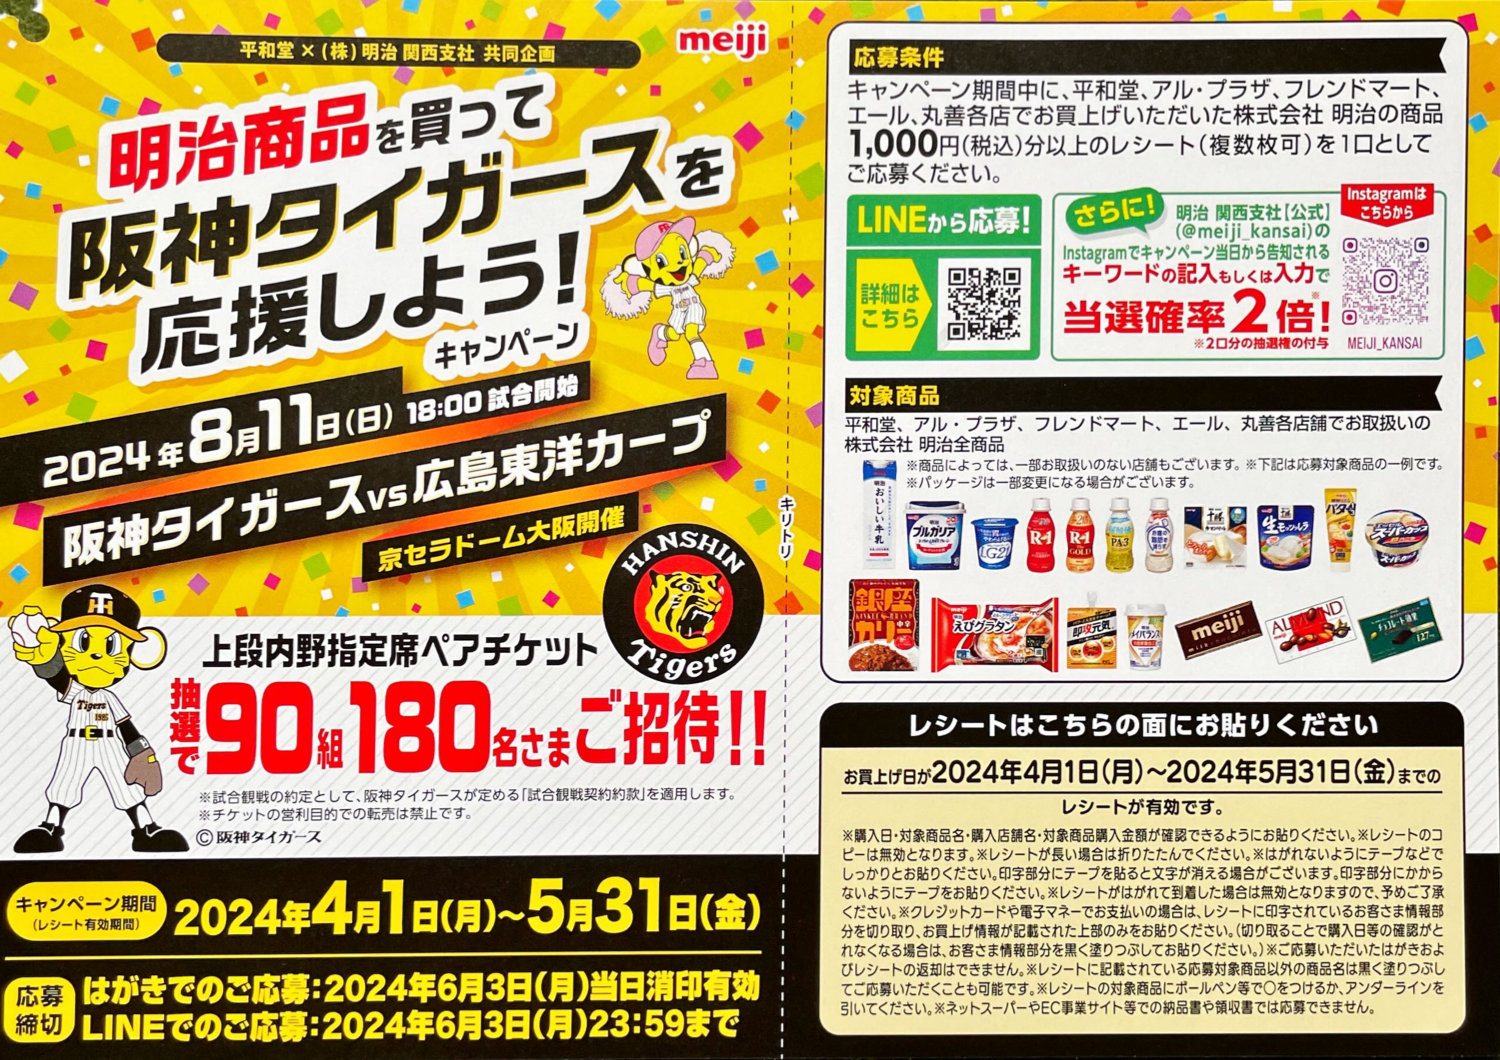 【平和堂×明治】明治商品を買って阪神タイガースを応援しよう！キャンペーン